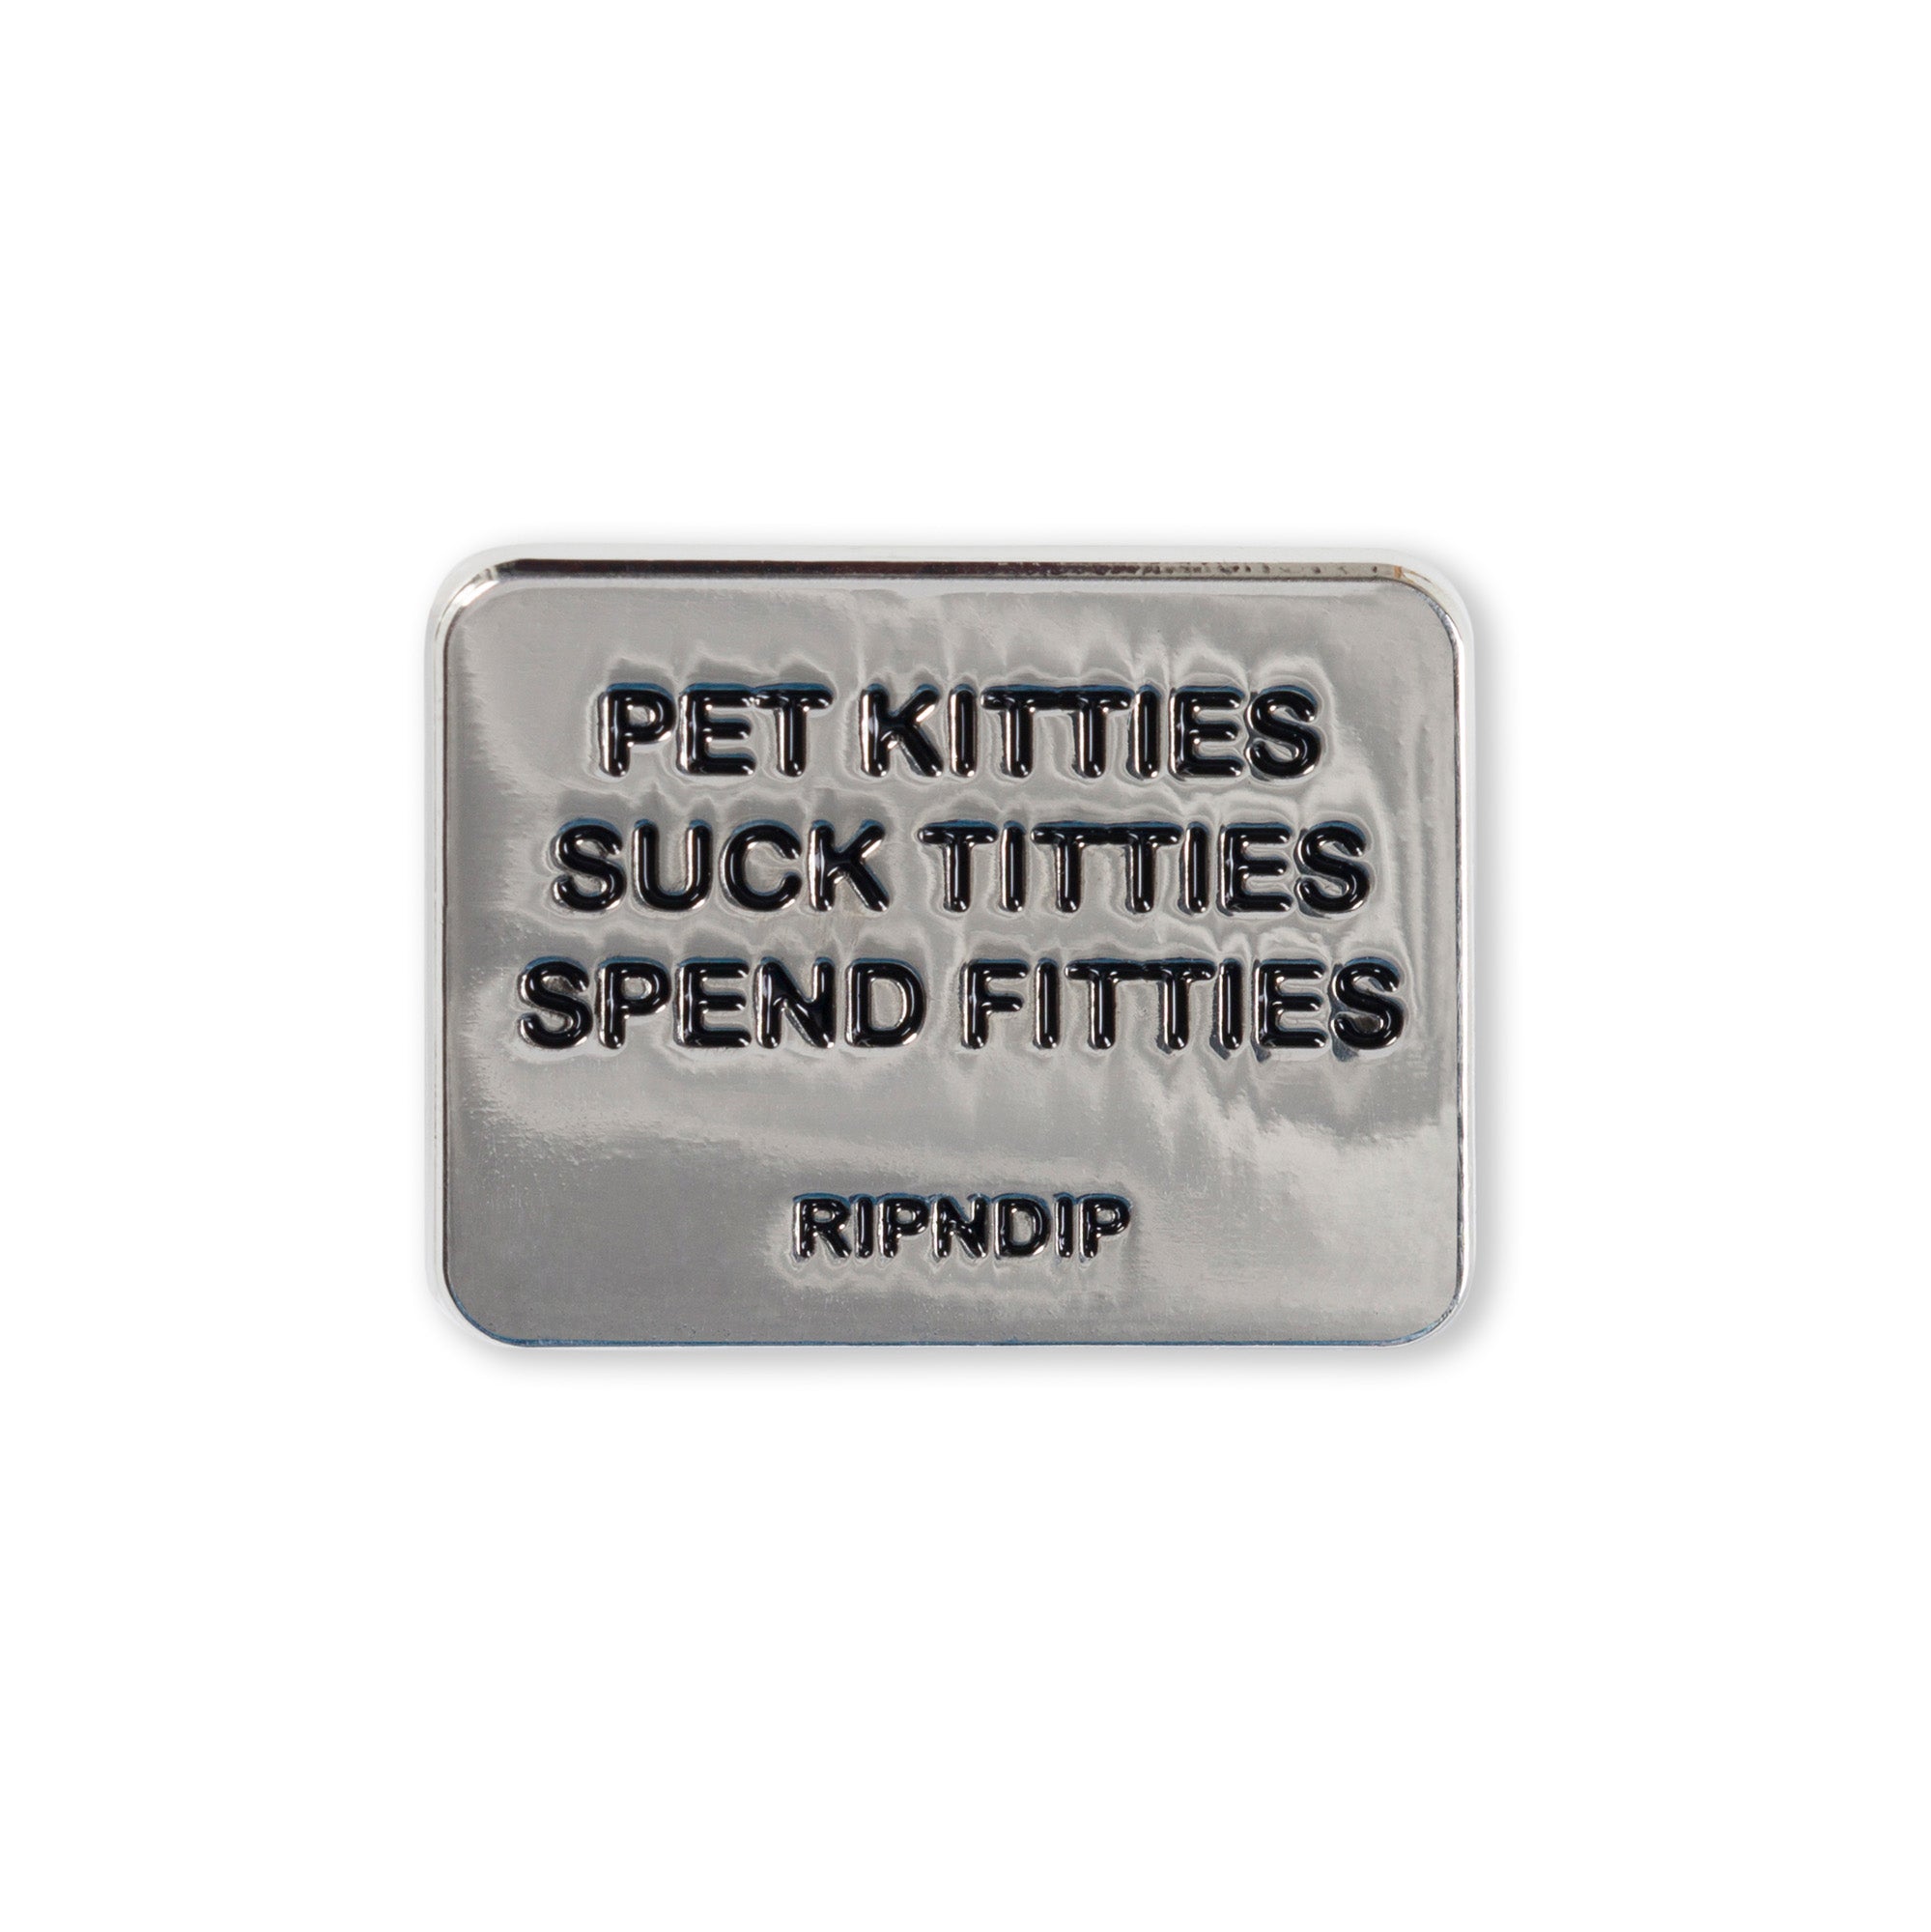 RIPNDIP Pet Kitties Pin (Multi)